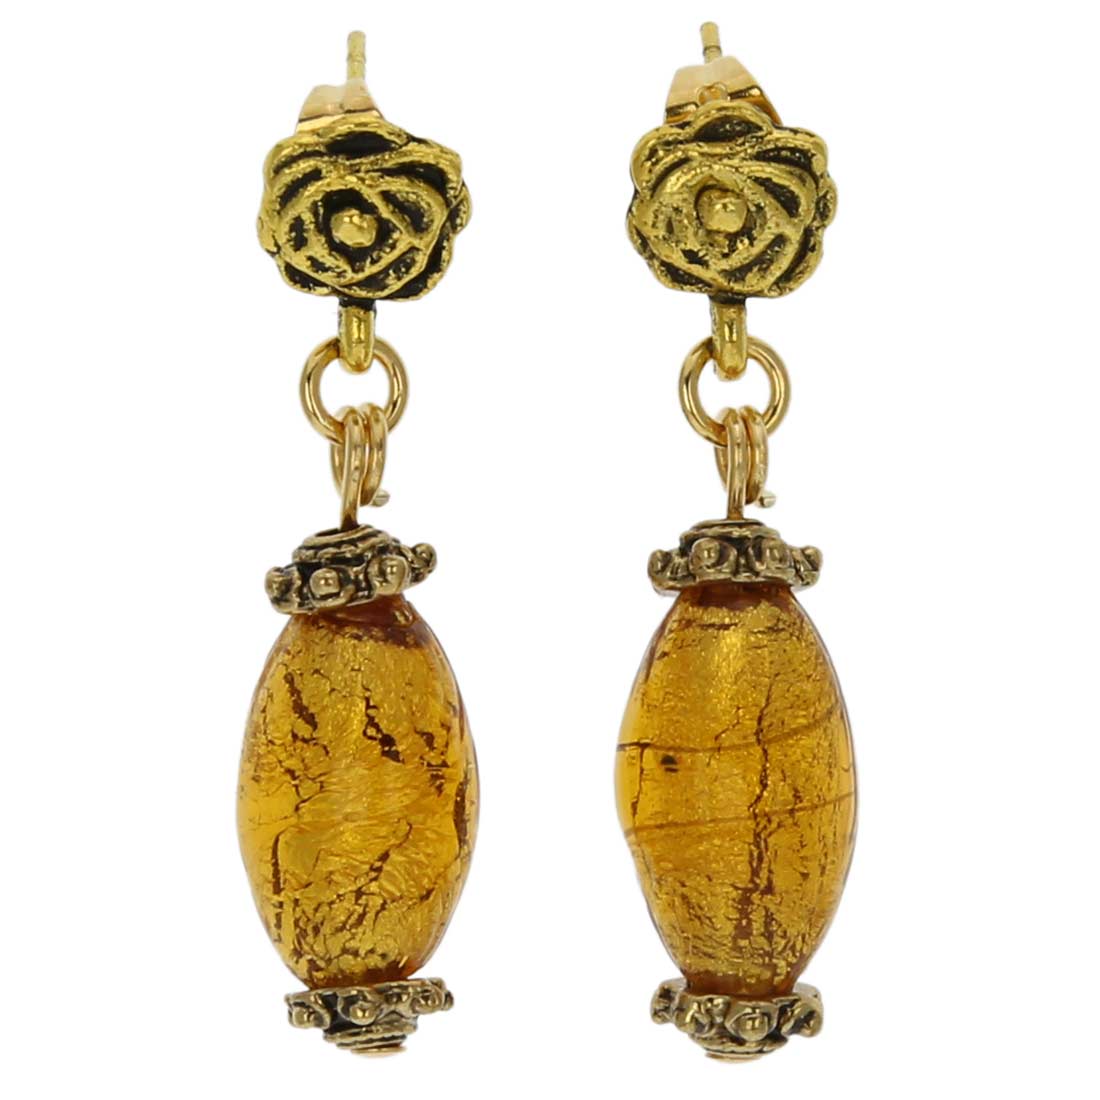 Antico Tesoro Olives Earrings - Golden Brown